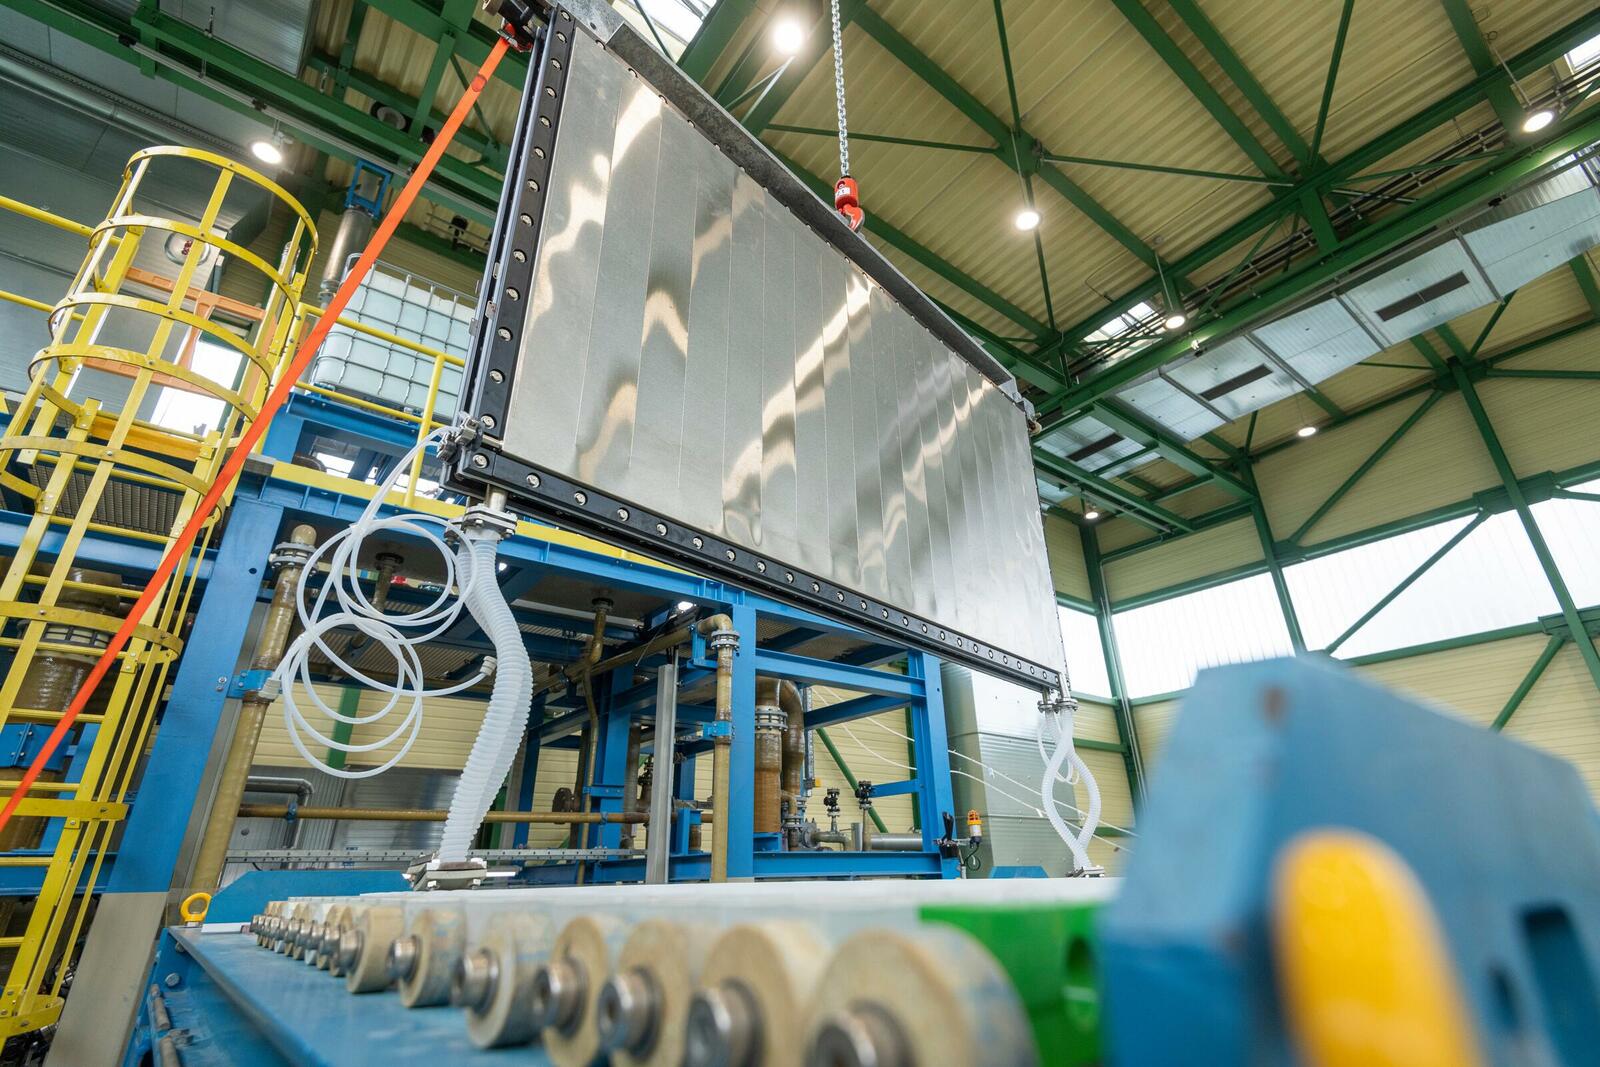 Thyssenkrupp Uhde Chlorine Engineers wird eine 200 MW Elektrolyse-Anlage auf der Basis seines 20 MW Großmoduls für die alkalische Wasserelektrolyse fertigen.